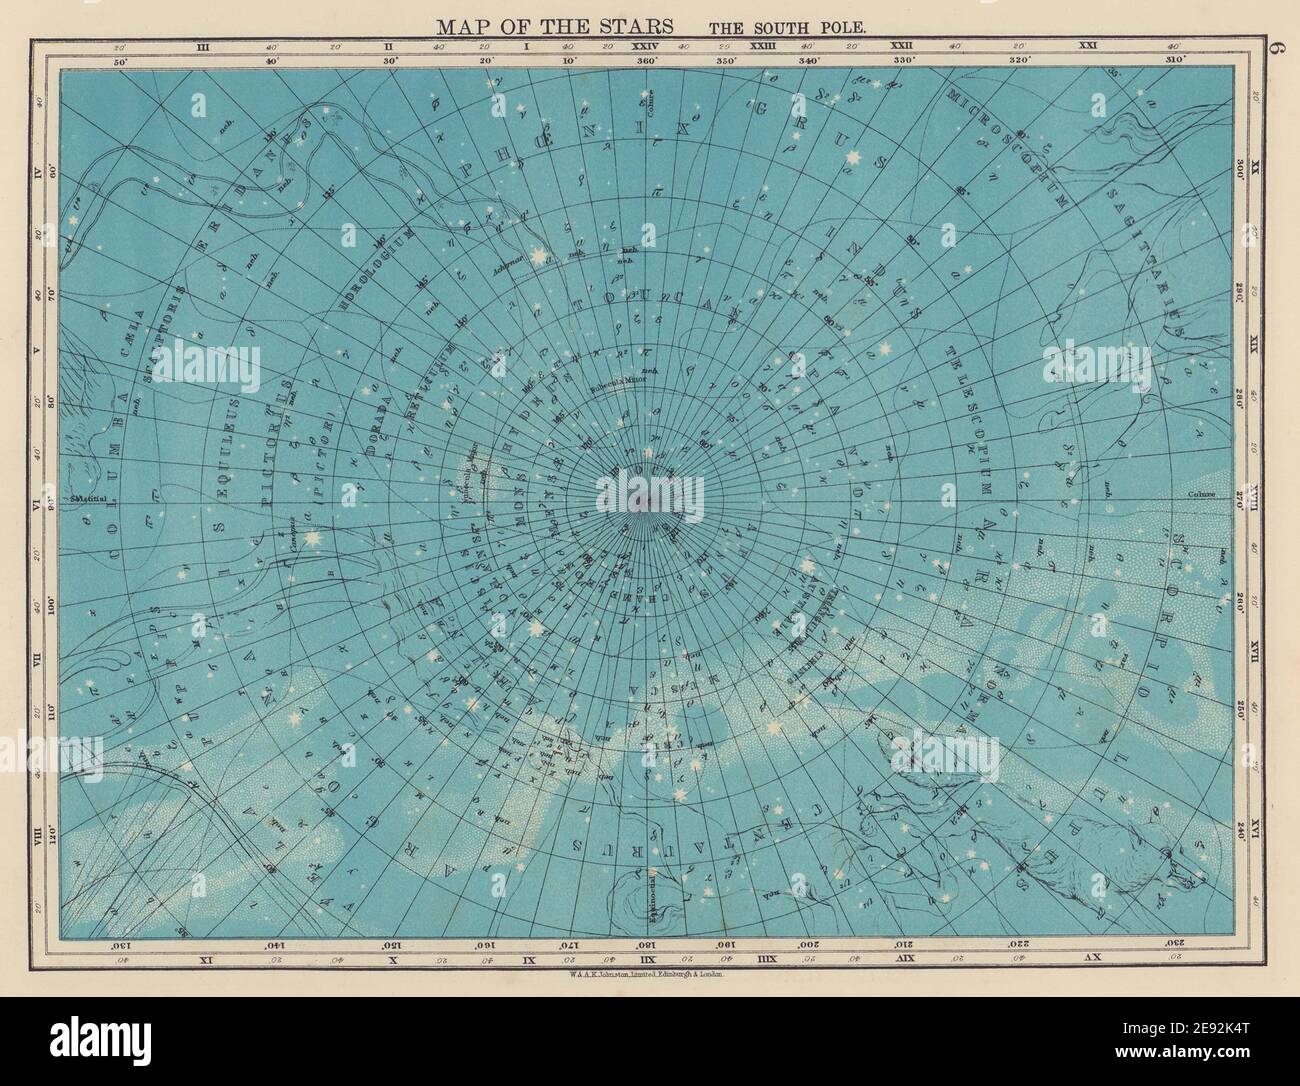 ASTRONOMIA. Mappa delle Stelle. Il Polo Sud. Costellazioni. JOHNSTON 1901 Foto Stock